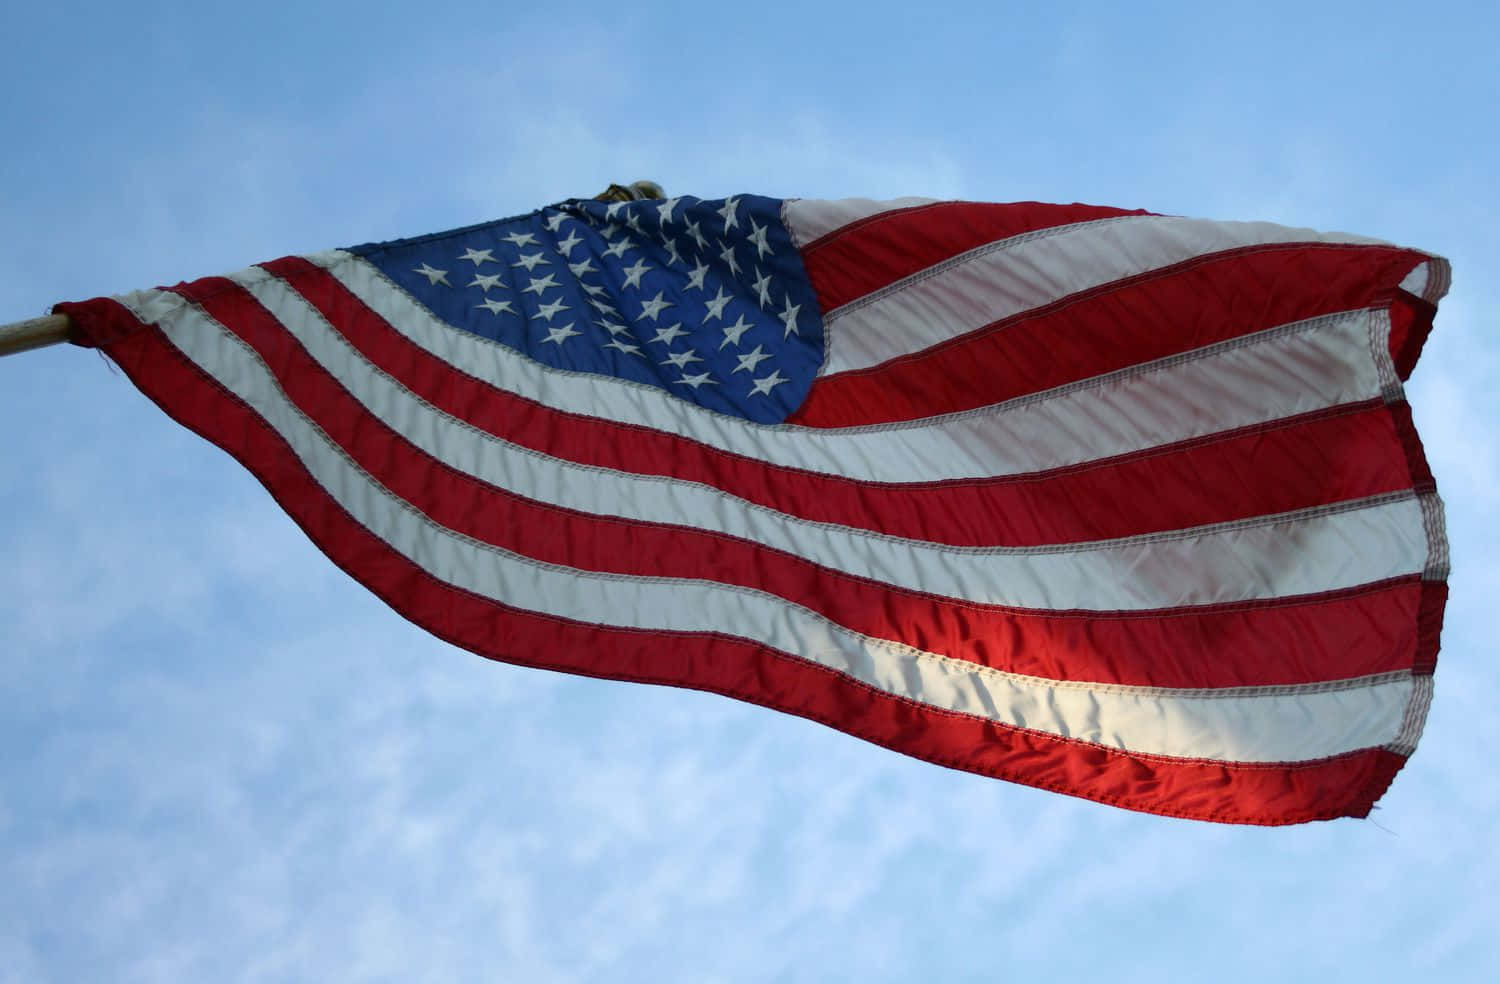 Enamerikansk Flagga Vajar I Vinden.